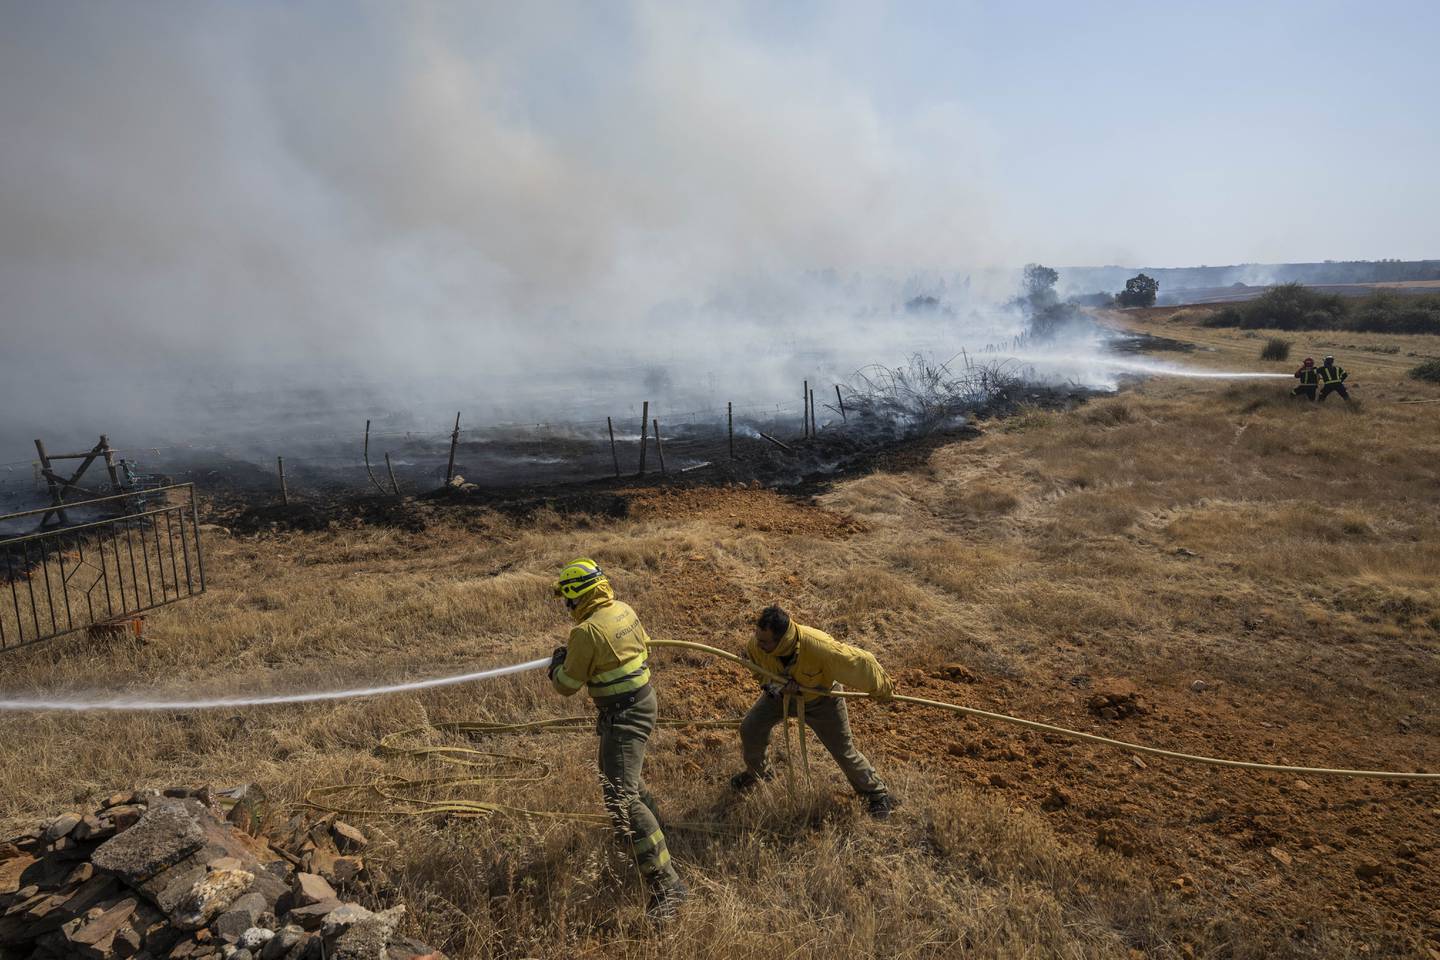 Europa er blitt rammet av store skogbranner tidligere enn vanlig i år, her fra Tabara nordvest i Spania i juli. Ifølge forskere vil brannene kunne gjøre mer skade etter hvert som klimaendringene forverres. Foto: Bernat Armangue / AP / NTB